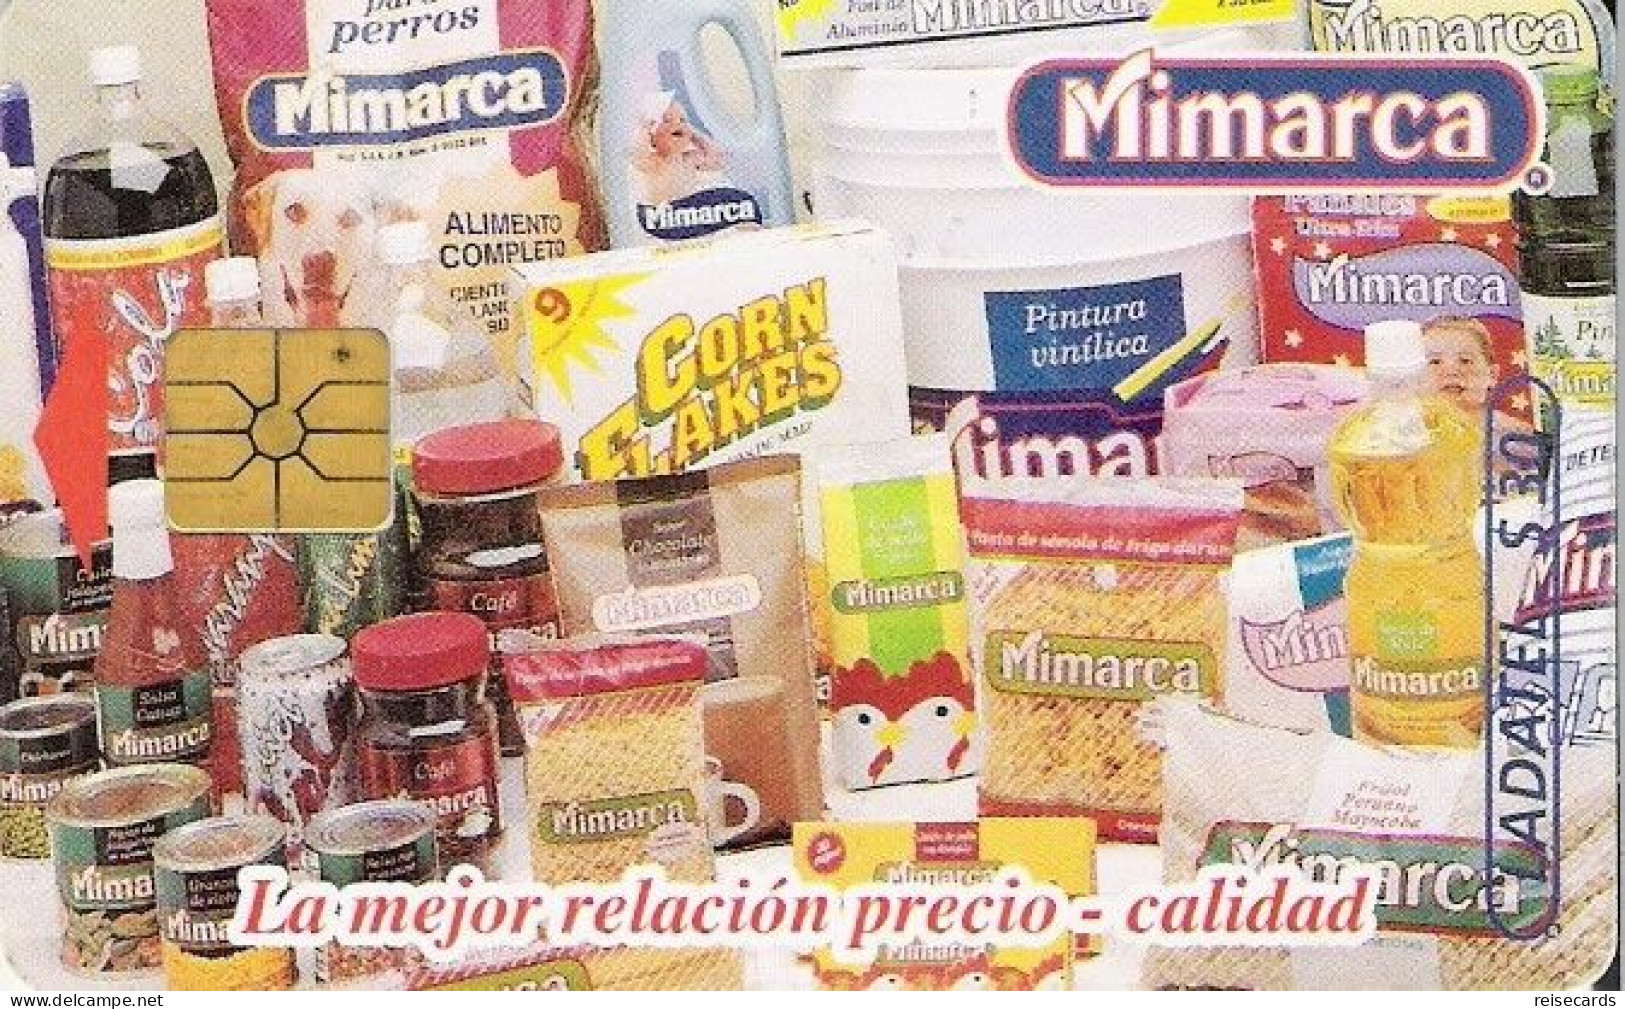 Mexico: Telmex/lLadatel - 1997 Mimarca - México